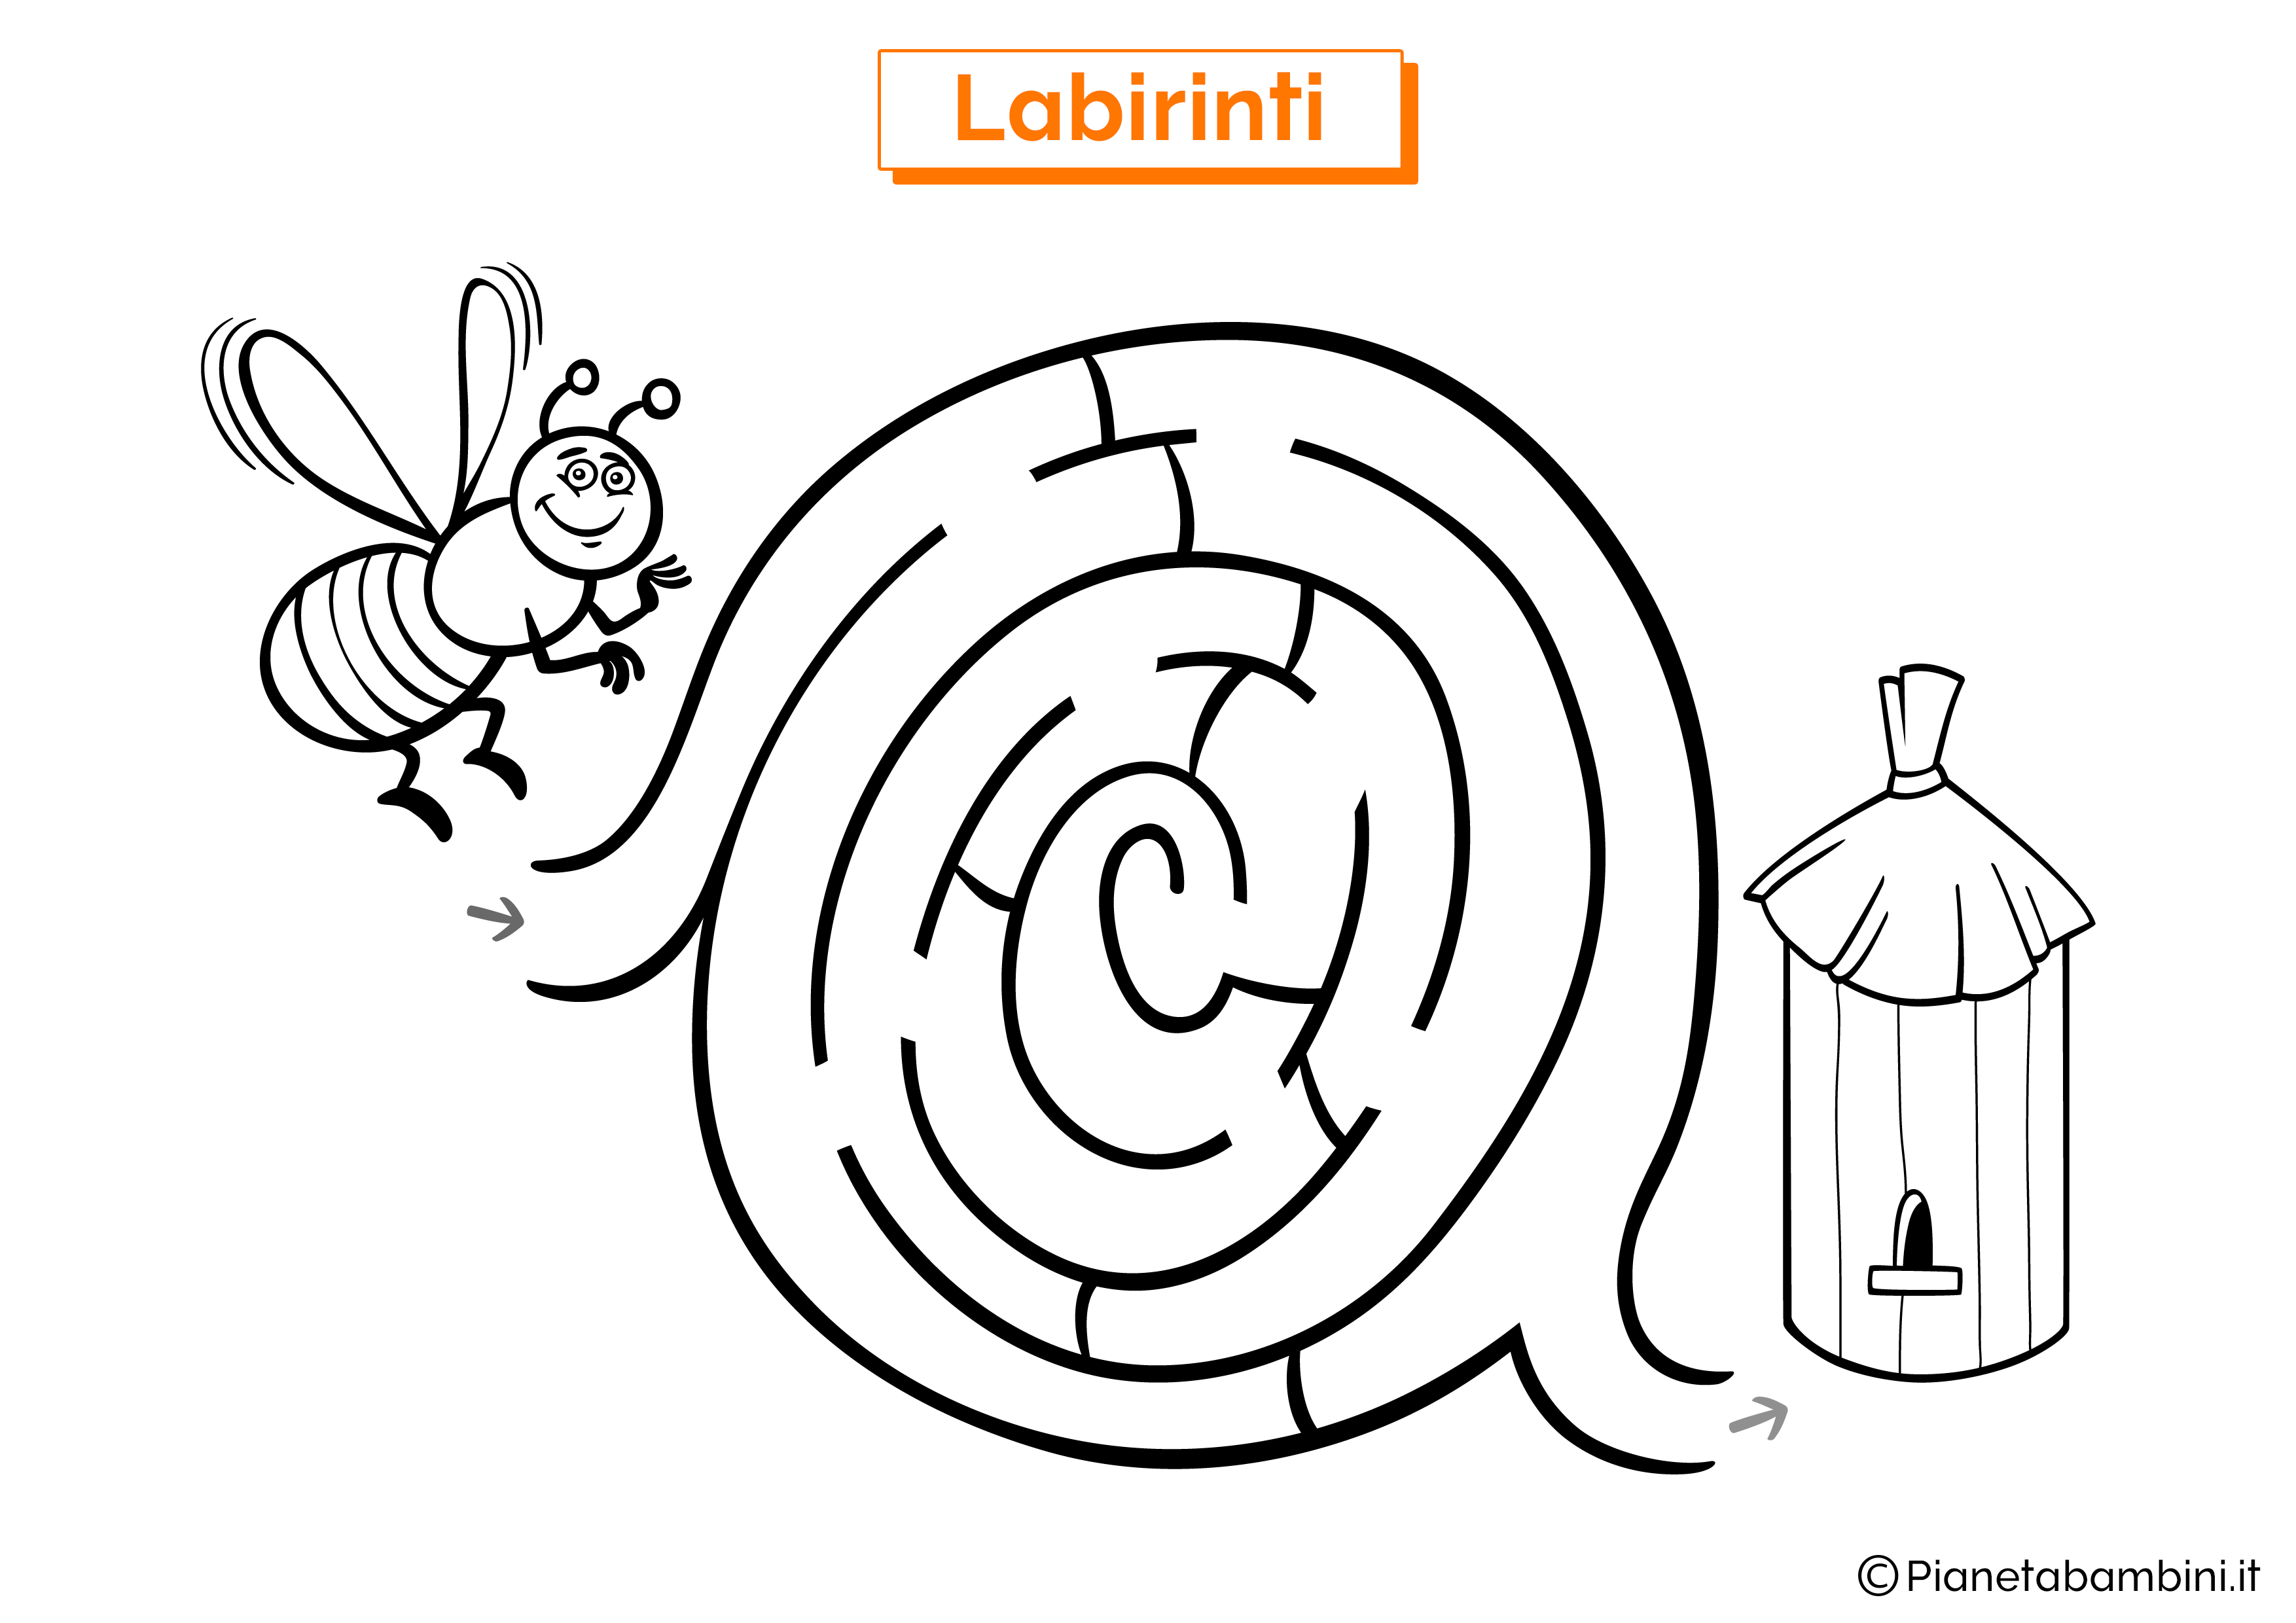 Labirinto con ape e alveare da stampare